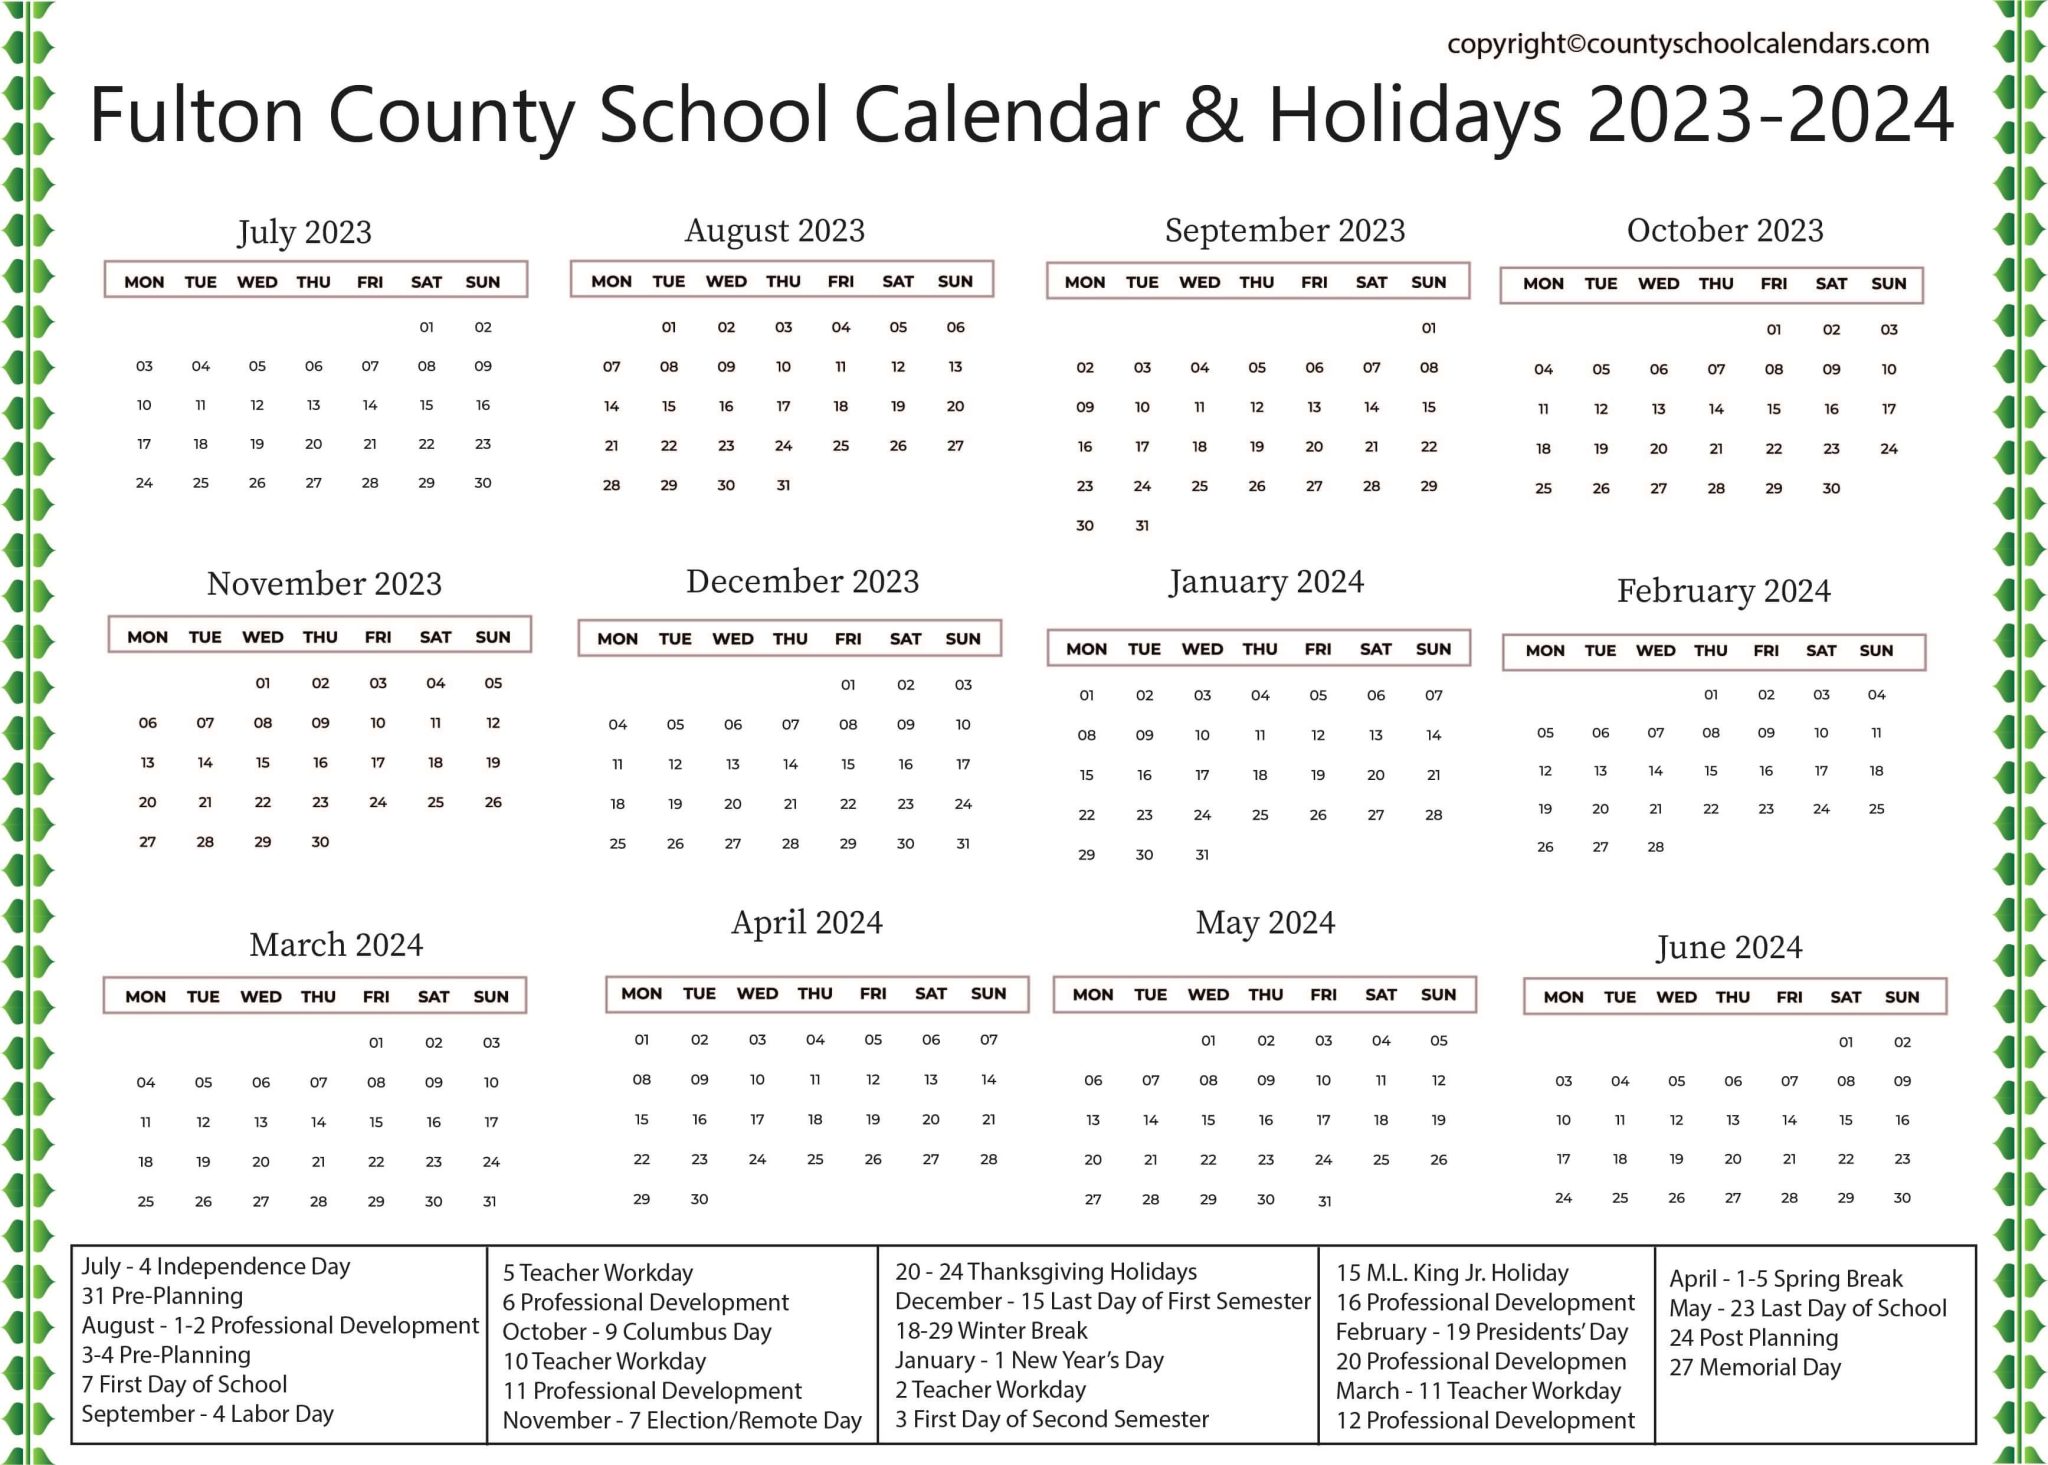 fulton-county-school-calendar-holidays-2023-2024